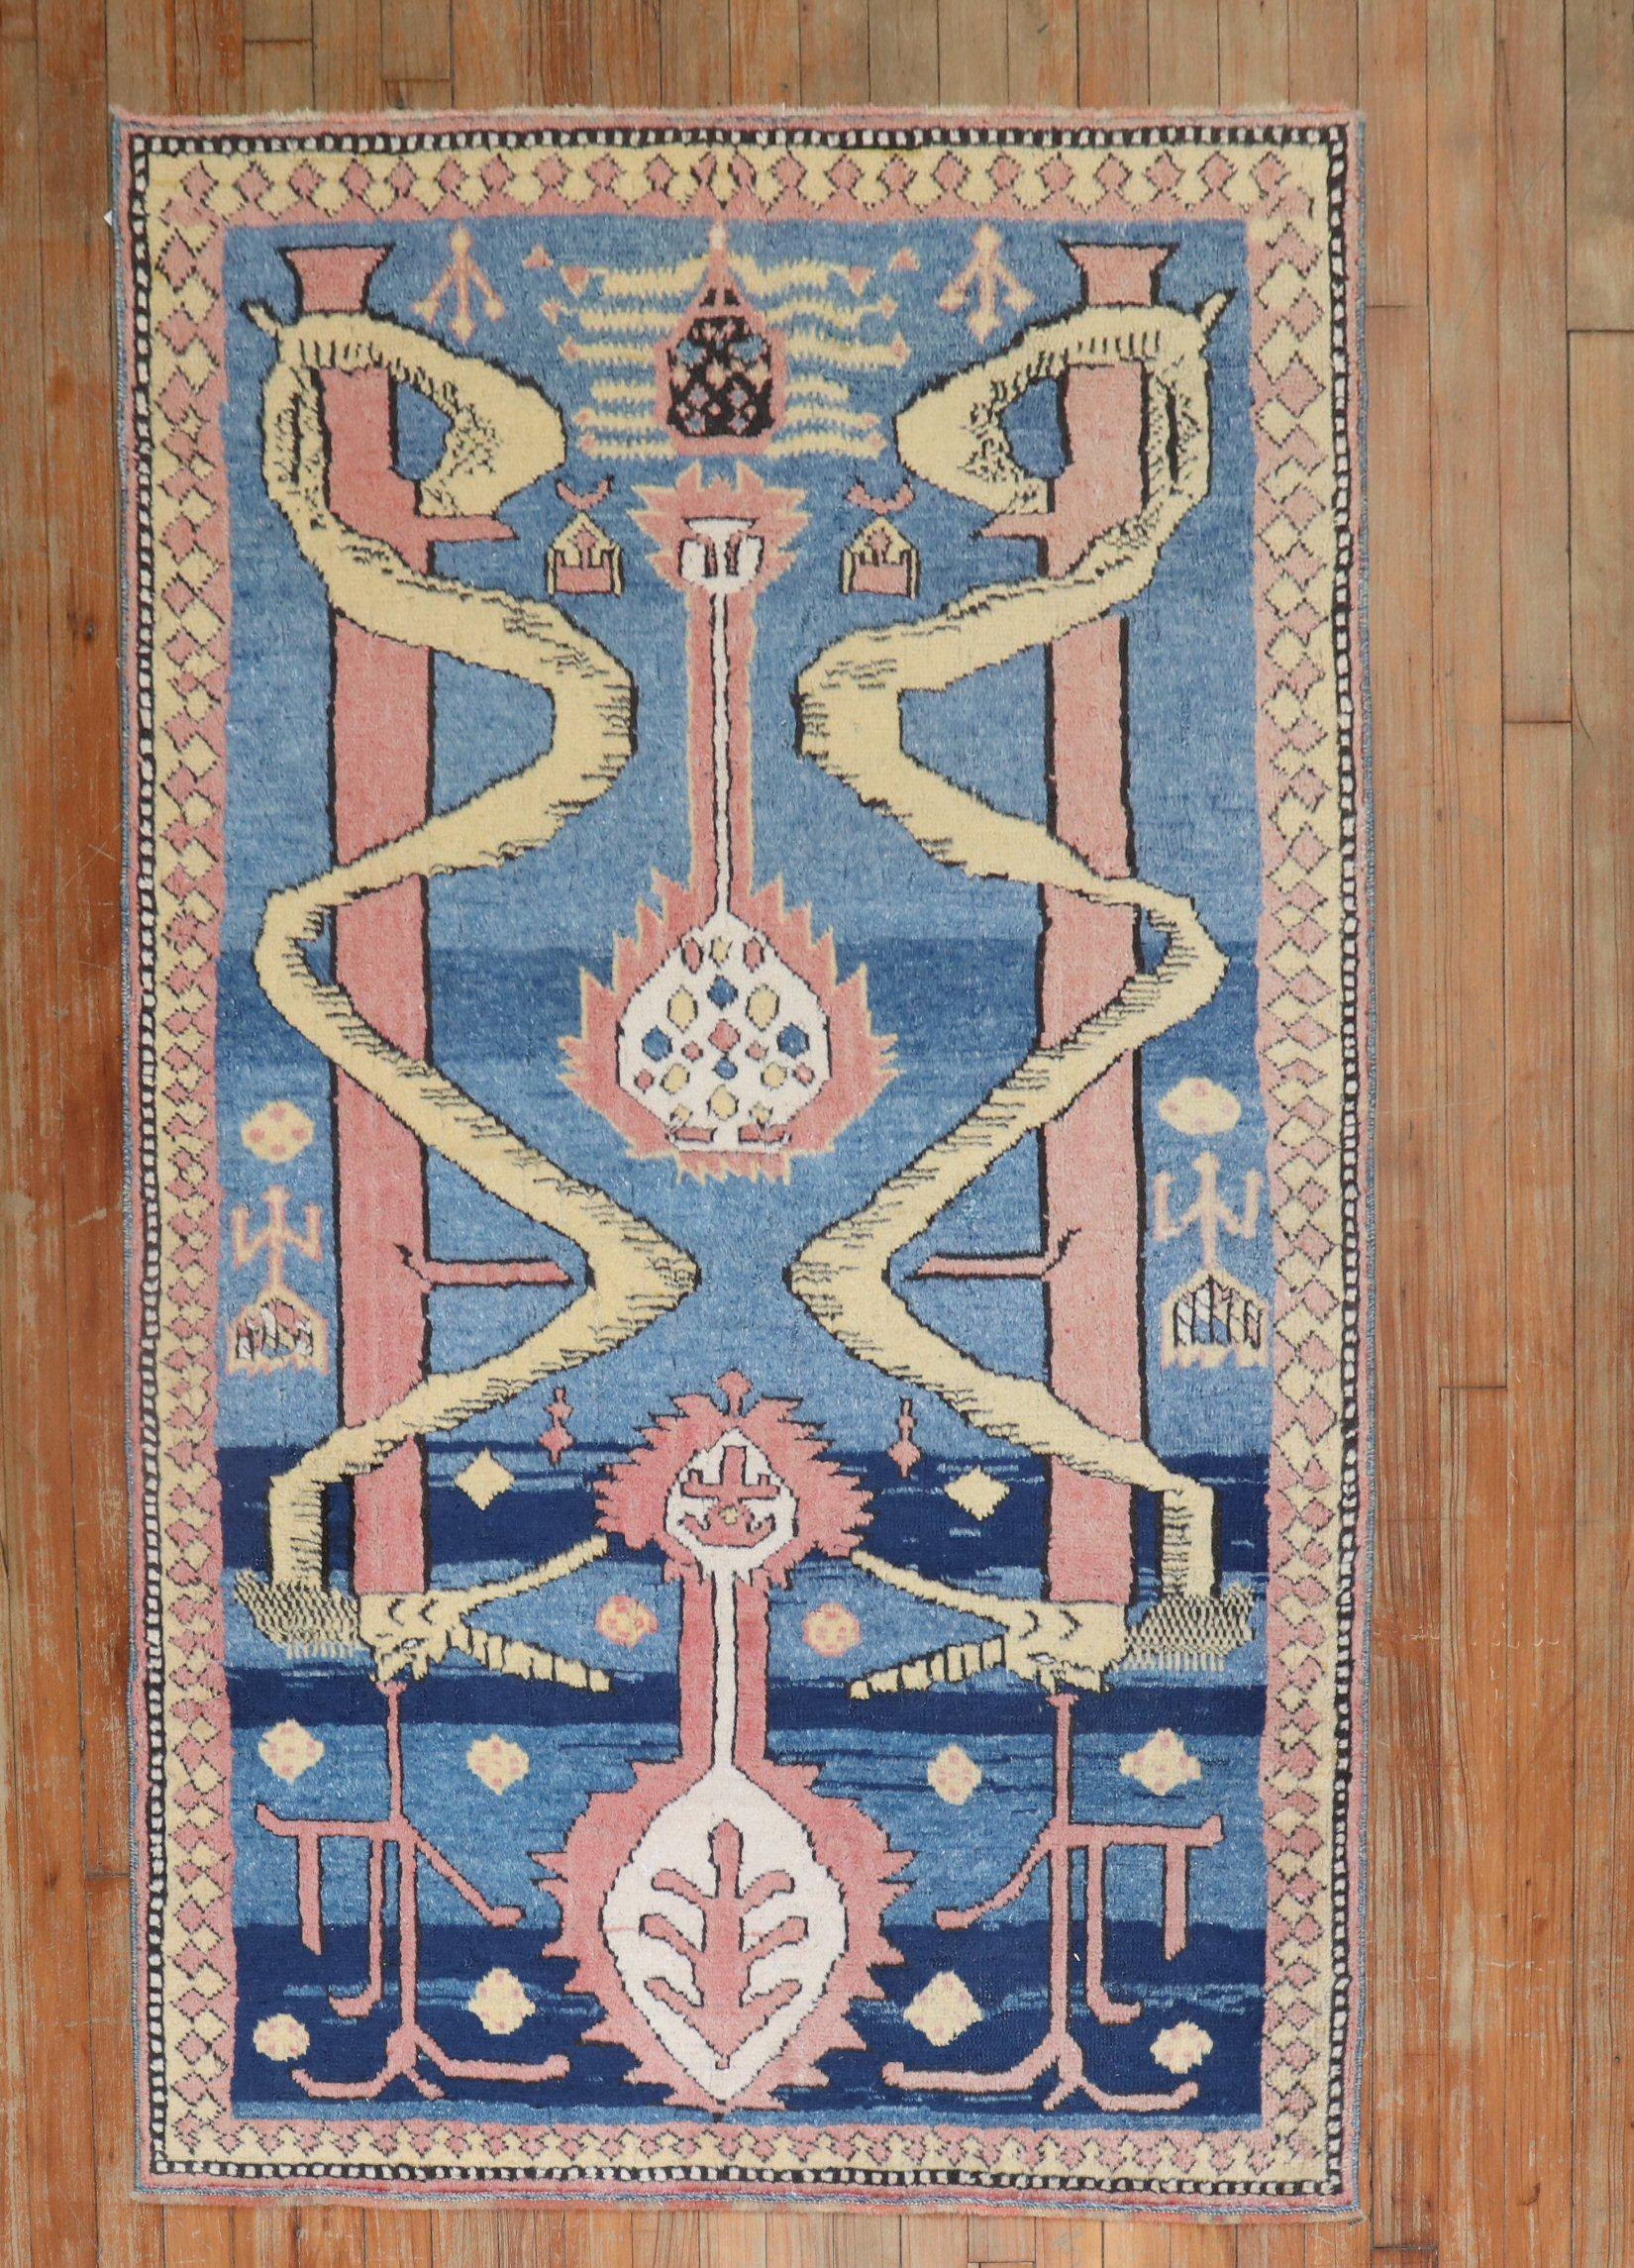 türkisch-anatolischer Teppich aus dem 3. Quartal des 20. Jahrhunderts mit 2 sich schlängelnden Schlangen auf blauem, gestreiften Grund.

Maße: 3'5' 'x 5'7''.